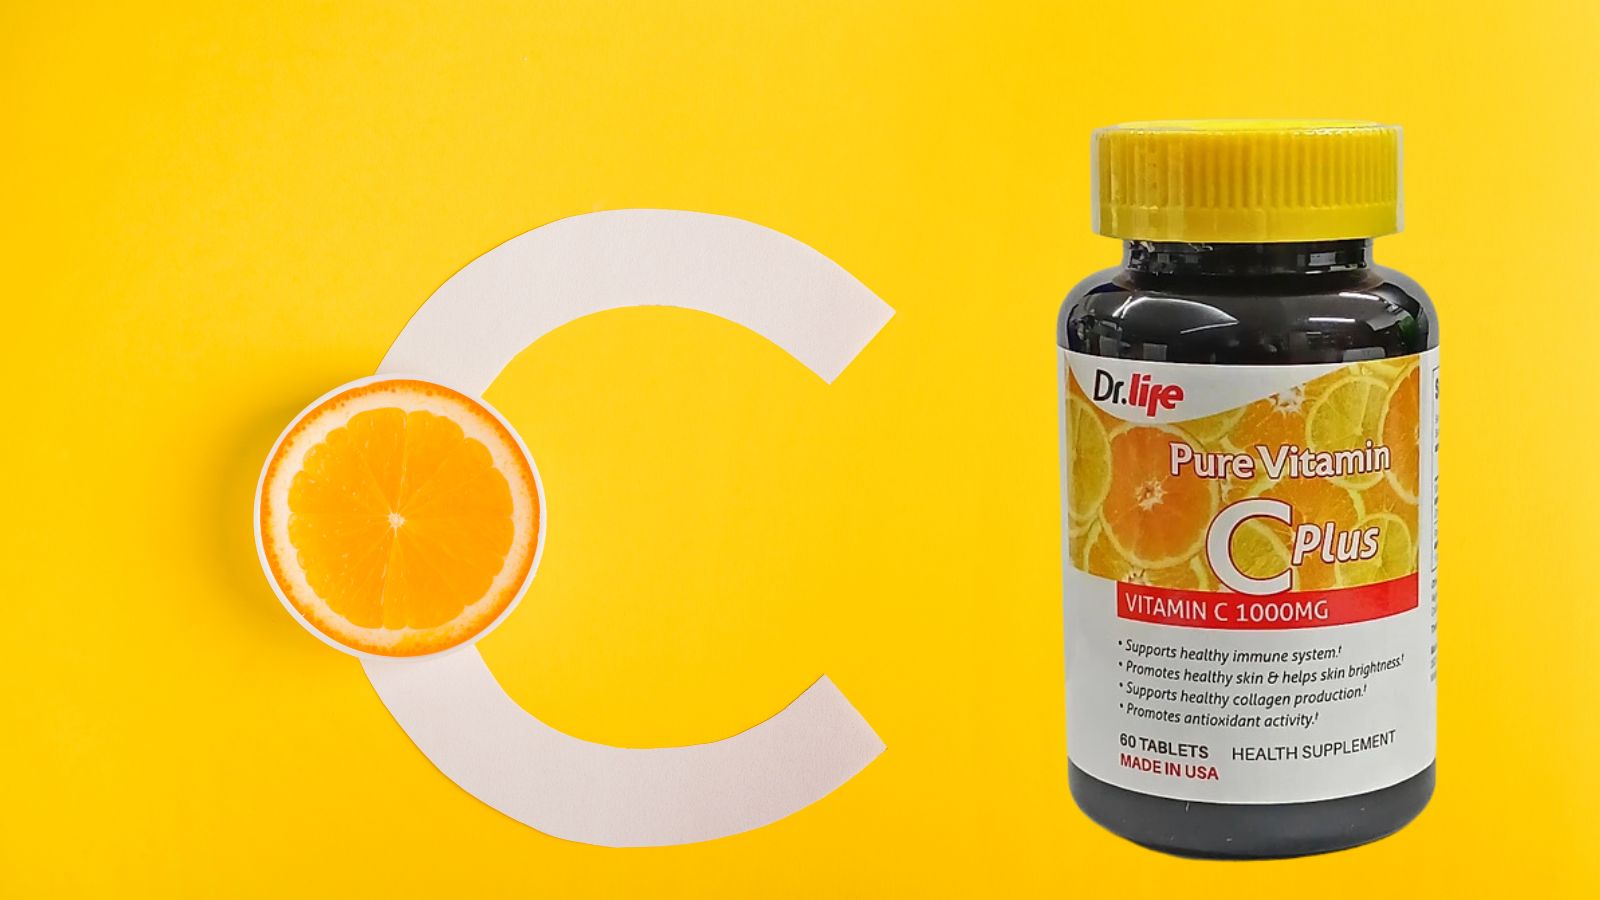 Pure Vitamin C Plus 1000mg mang đến tác dụng dưỡng trắng và bảo vệ da hiệu quả